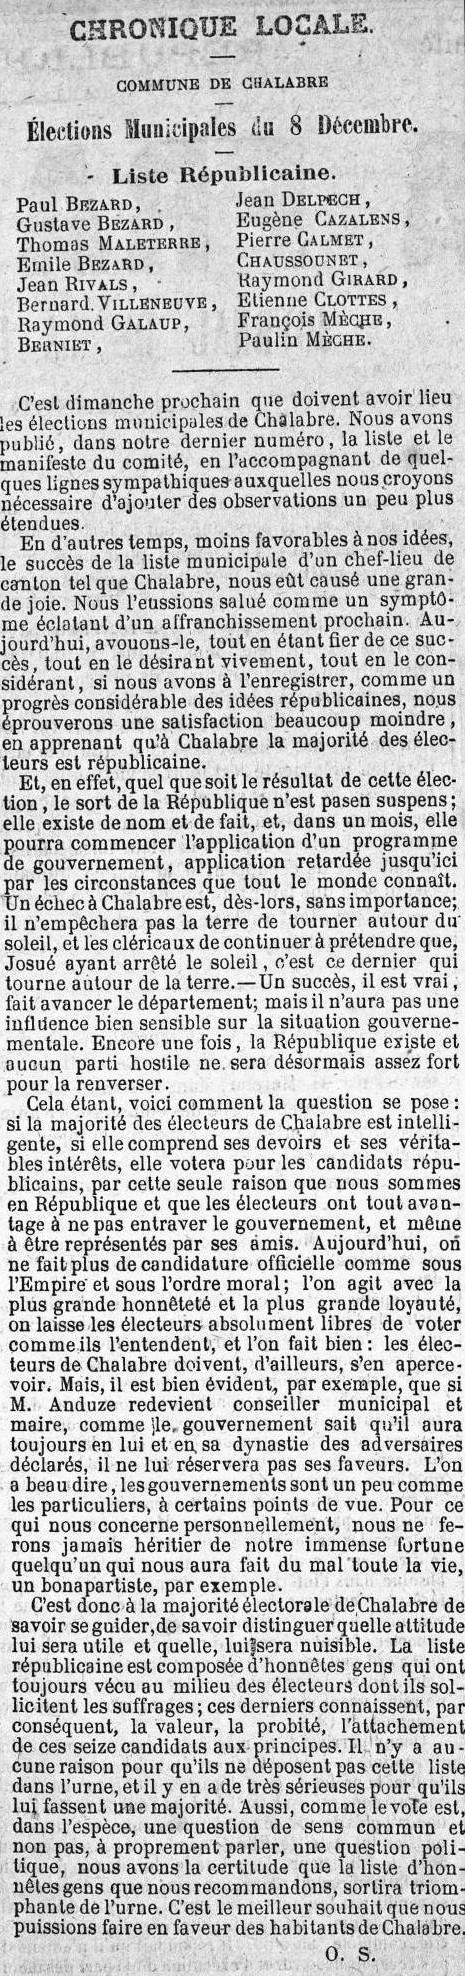 1878 La Fraternité 5 décembre Municipales.jpg